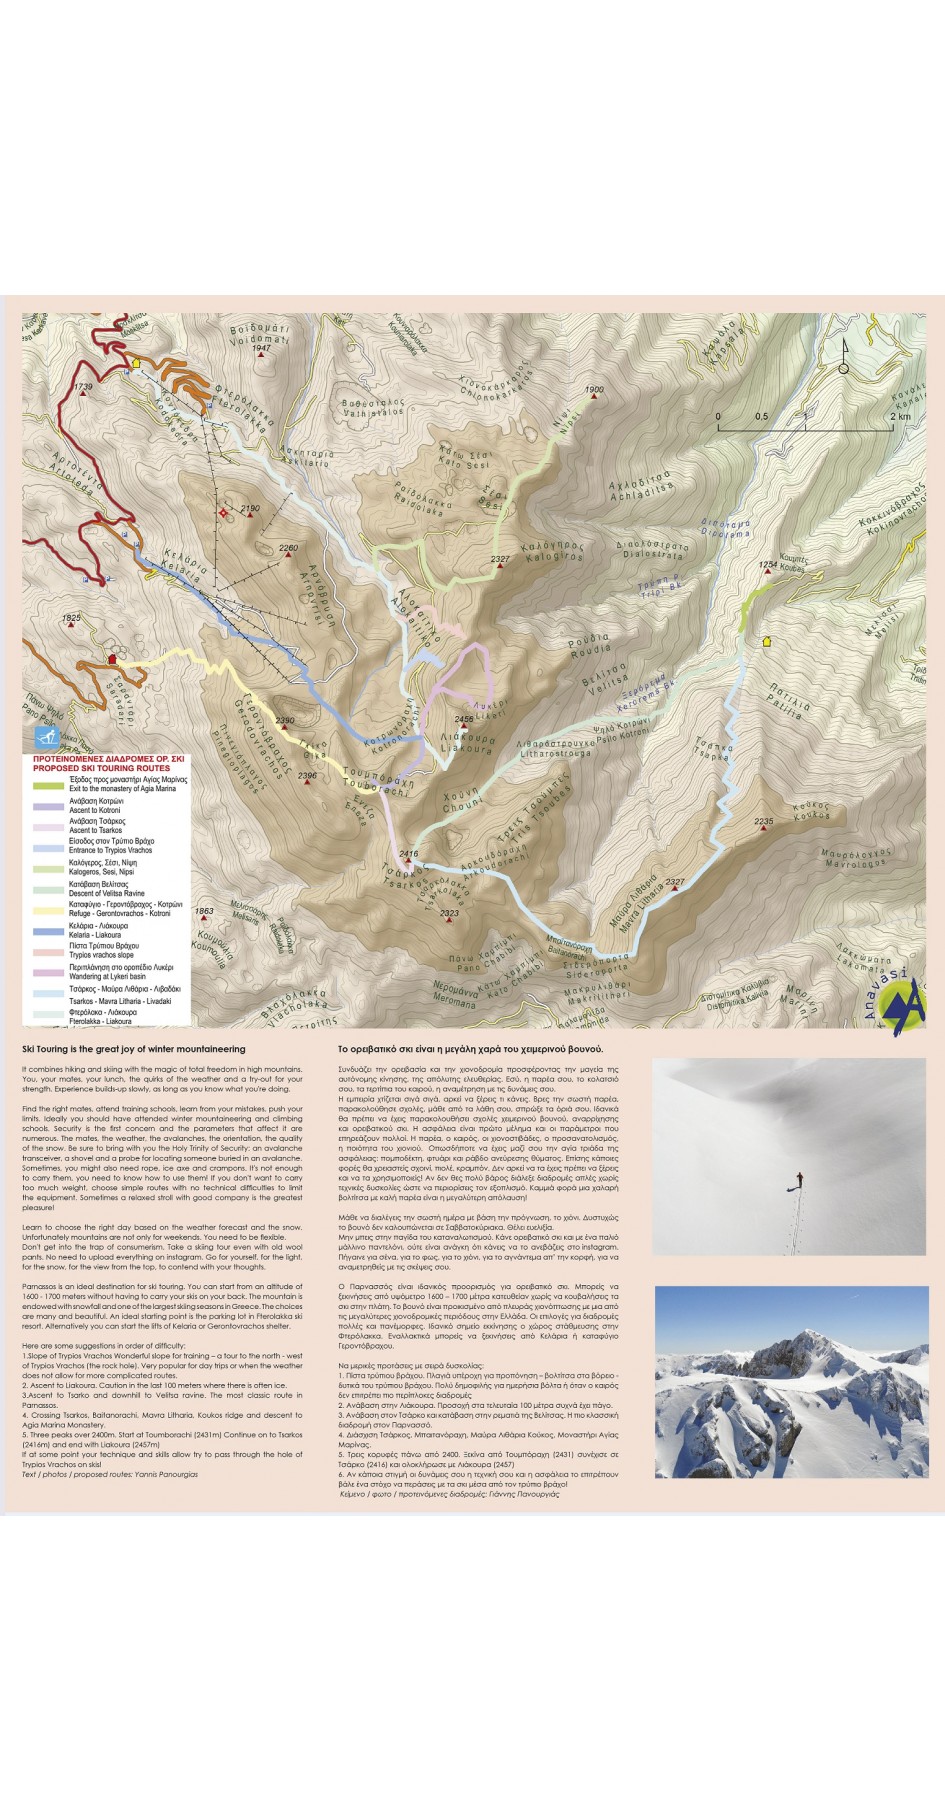 Parnassos • Hiking map 1:35 000